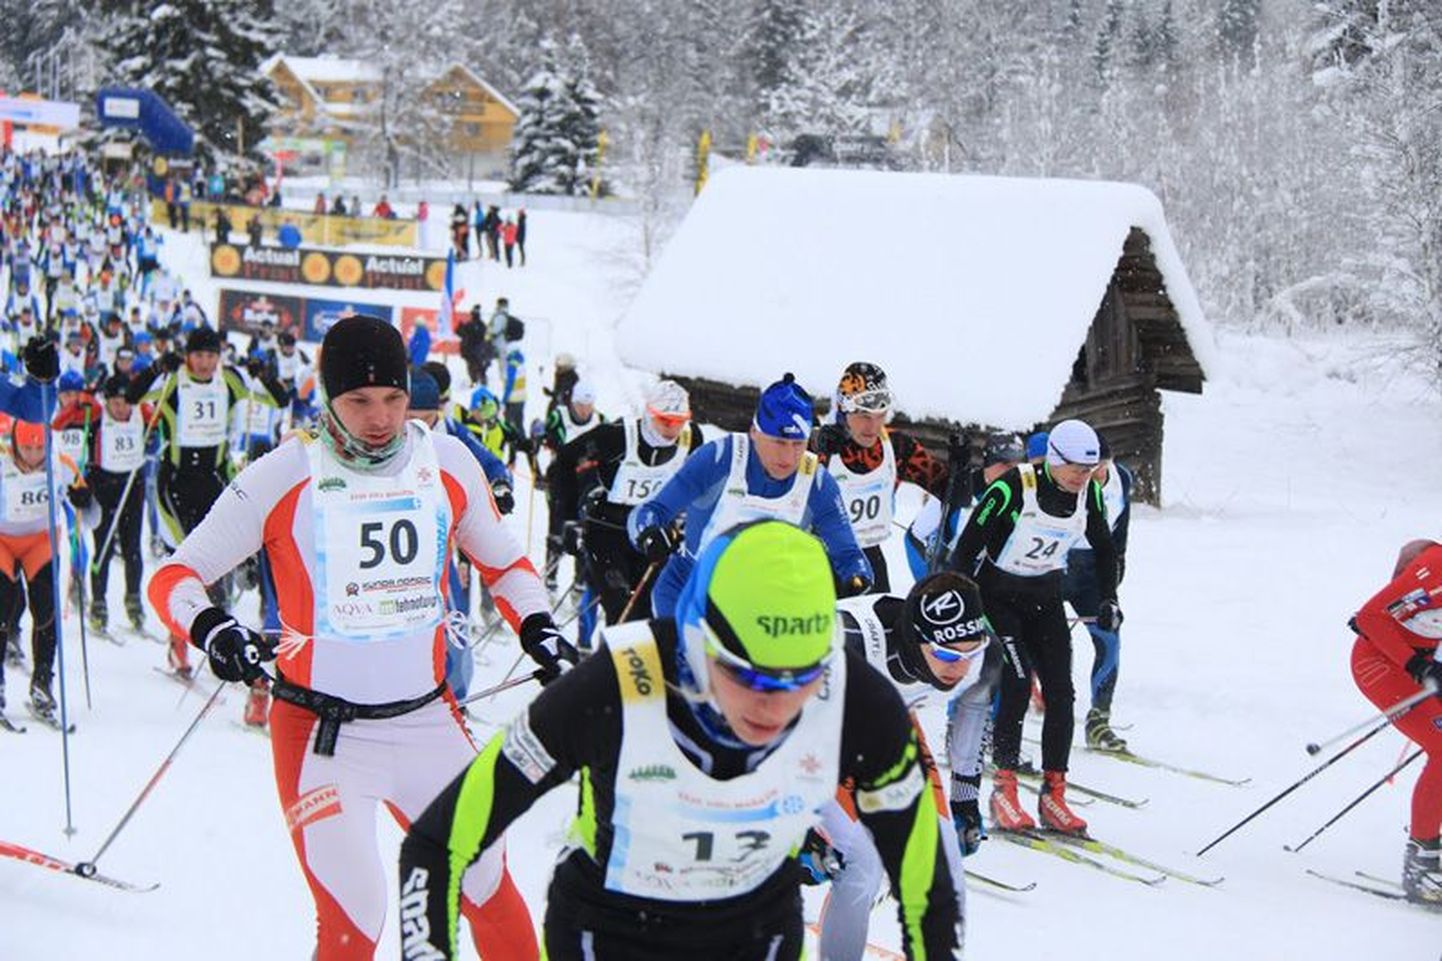 Lisaks võistlejatele tundsid talvepäevast rõõmu lumetuubitajad. Kuigi ilm väga külm ei olnud, oli nii mõnigi maratoonar härmas.